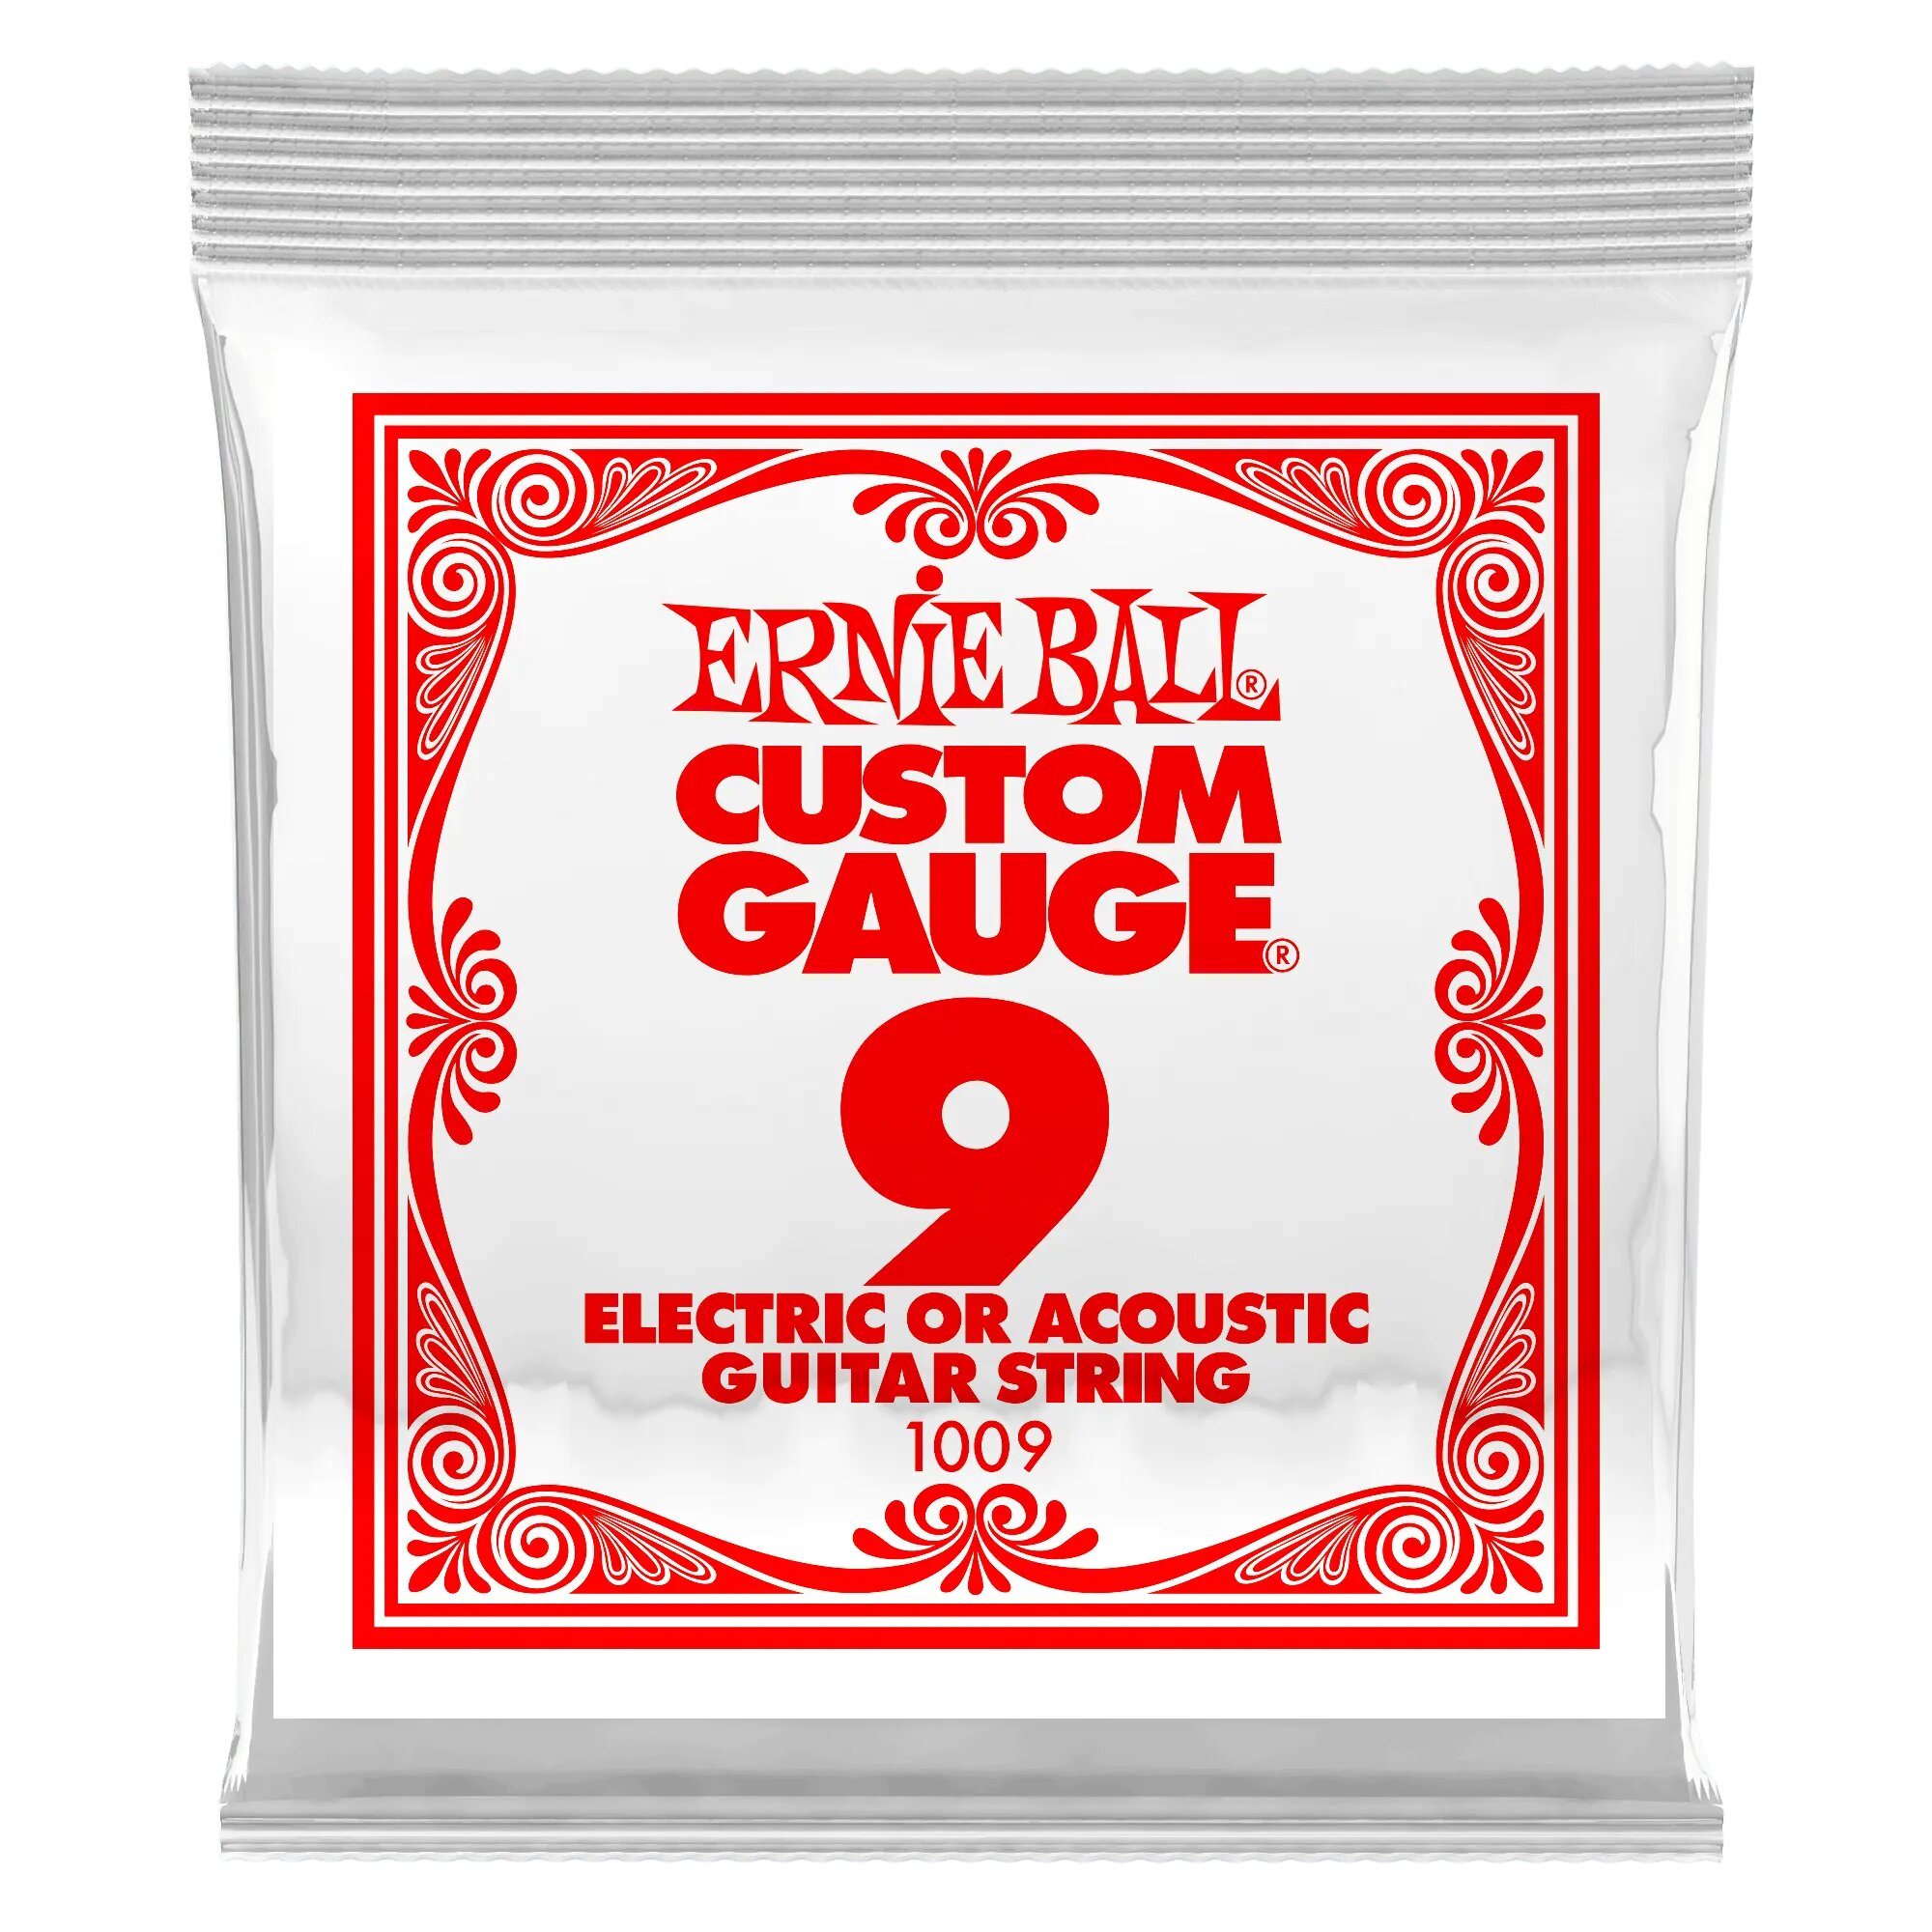 Струна для акустической и электрогитары Ernie Ball P01009 Custom gauge сталь калибр 9 Ernie Ball (Эрни Бол)